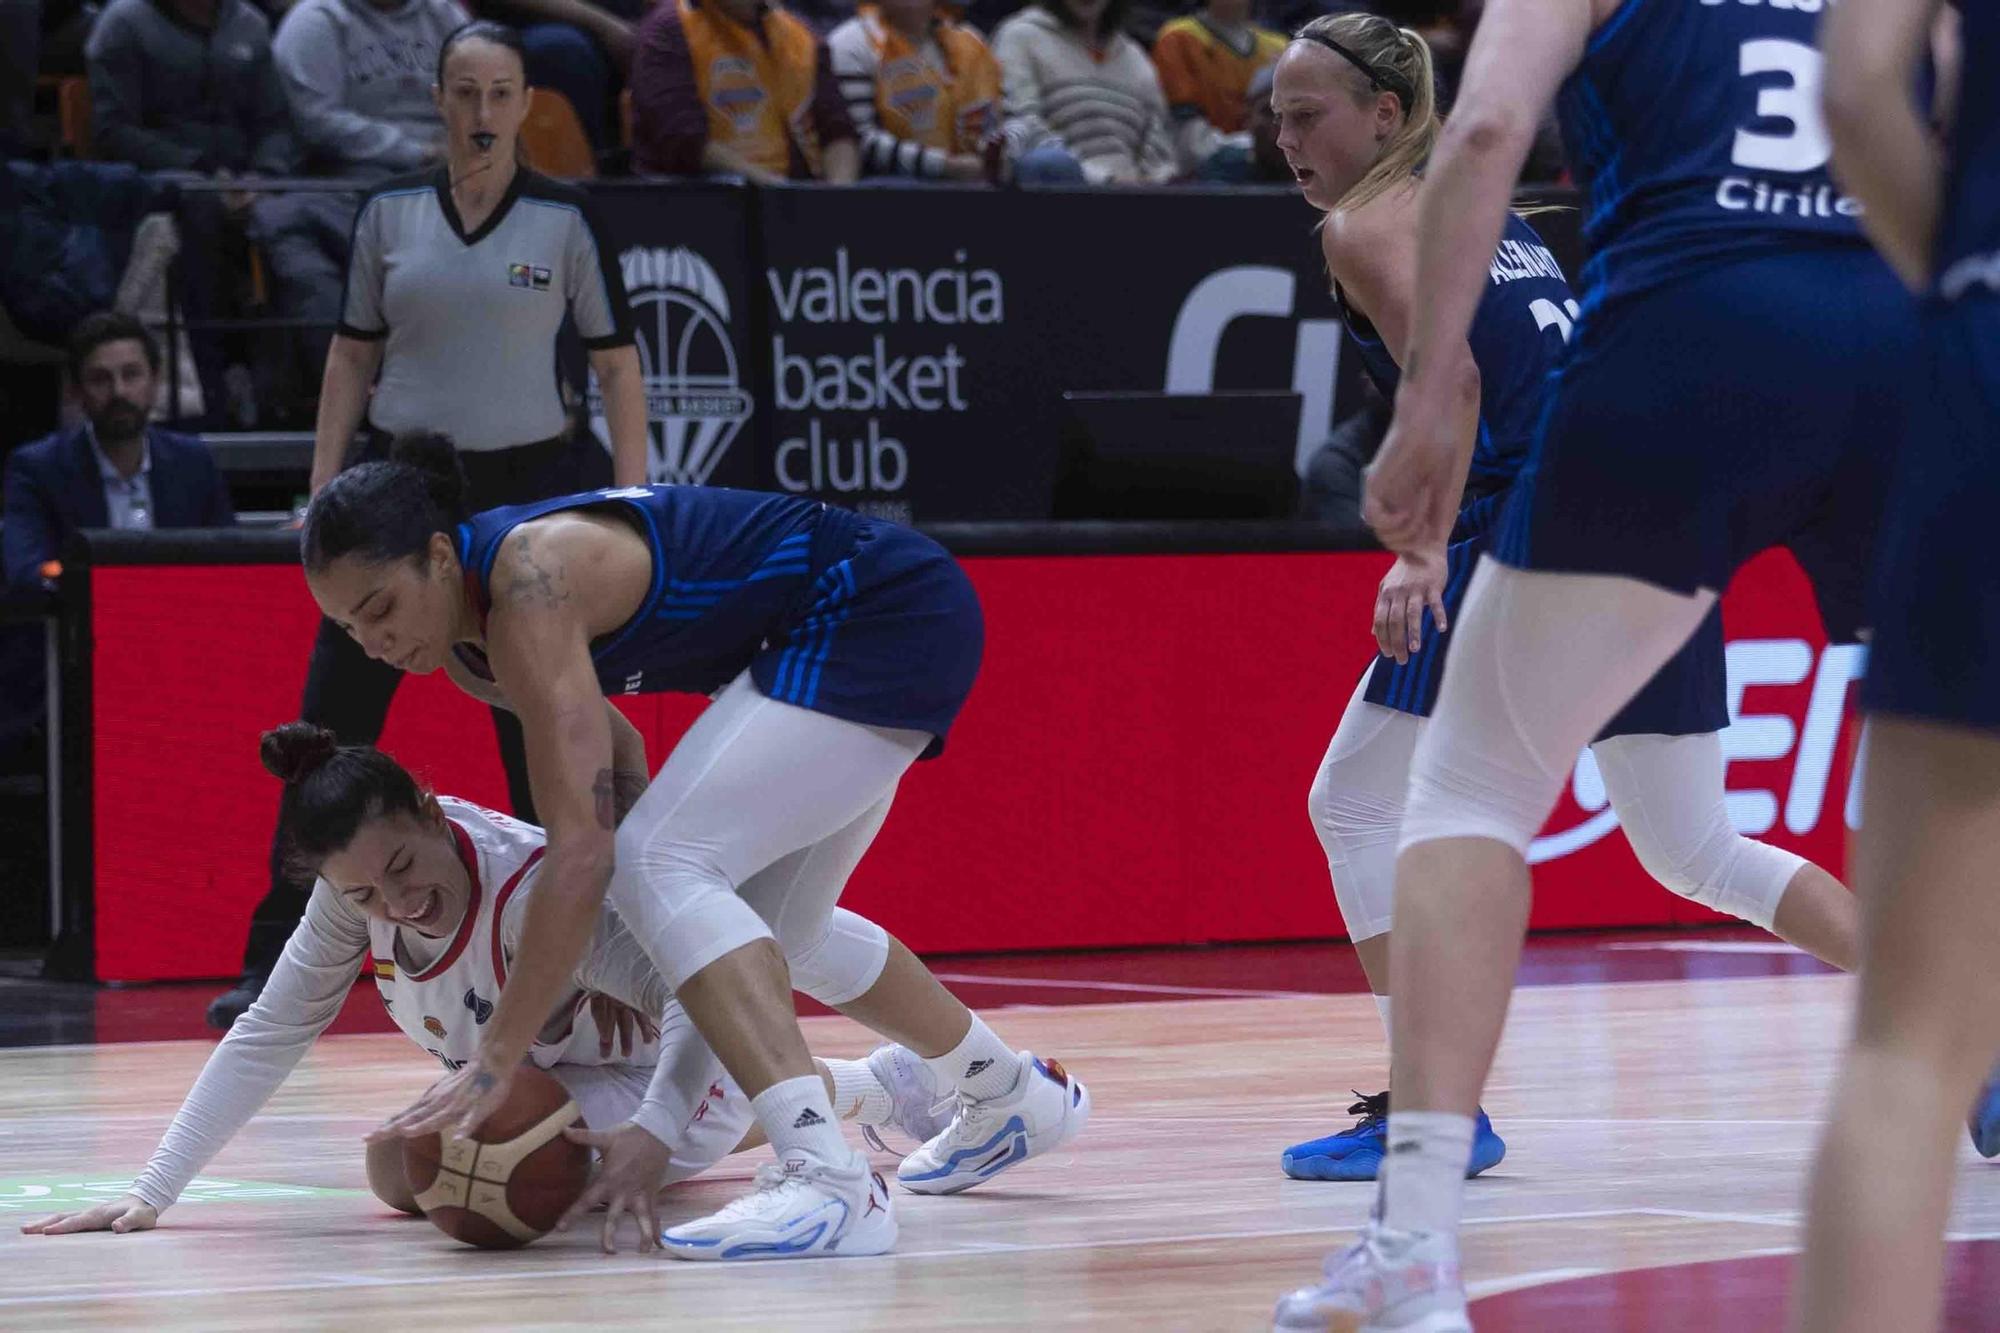 Partido Valencia Basket- LDLC Asvel